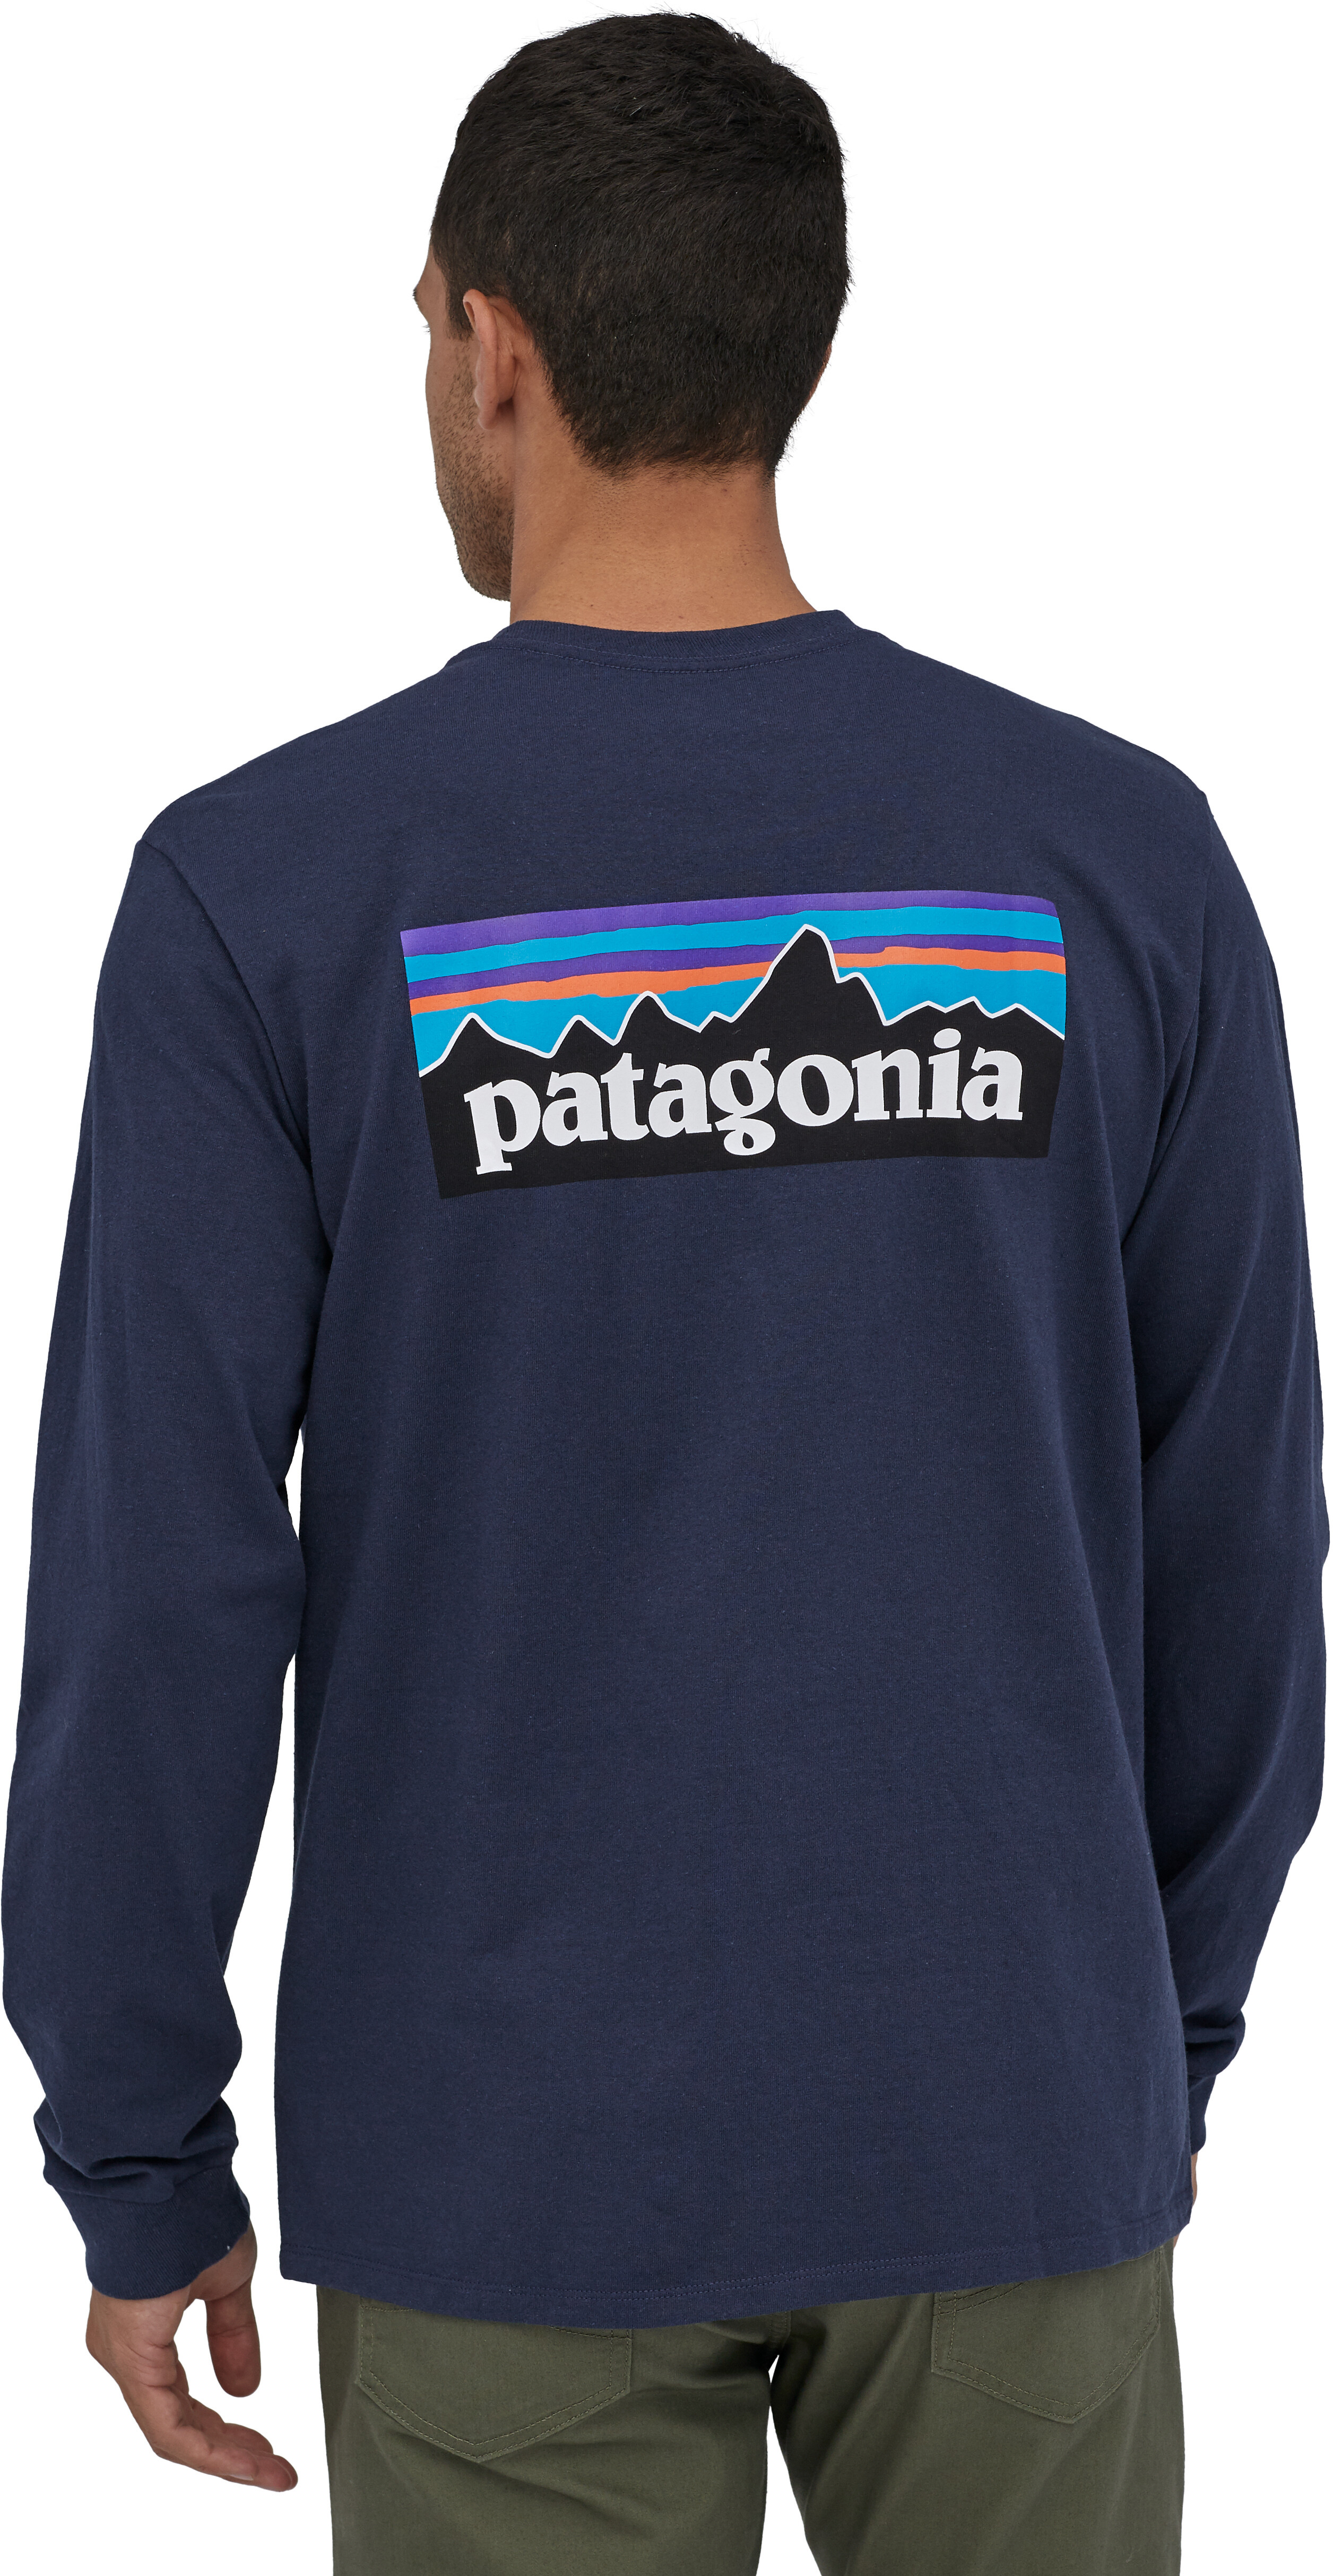 Patagonia top